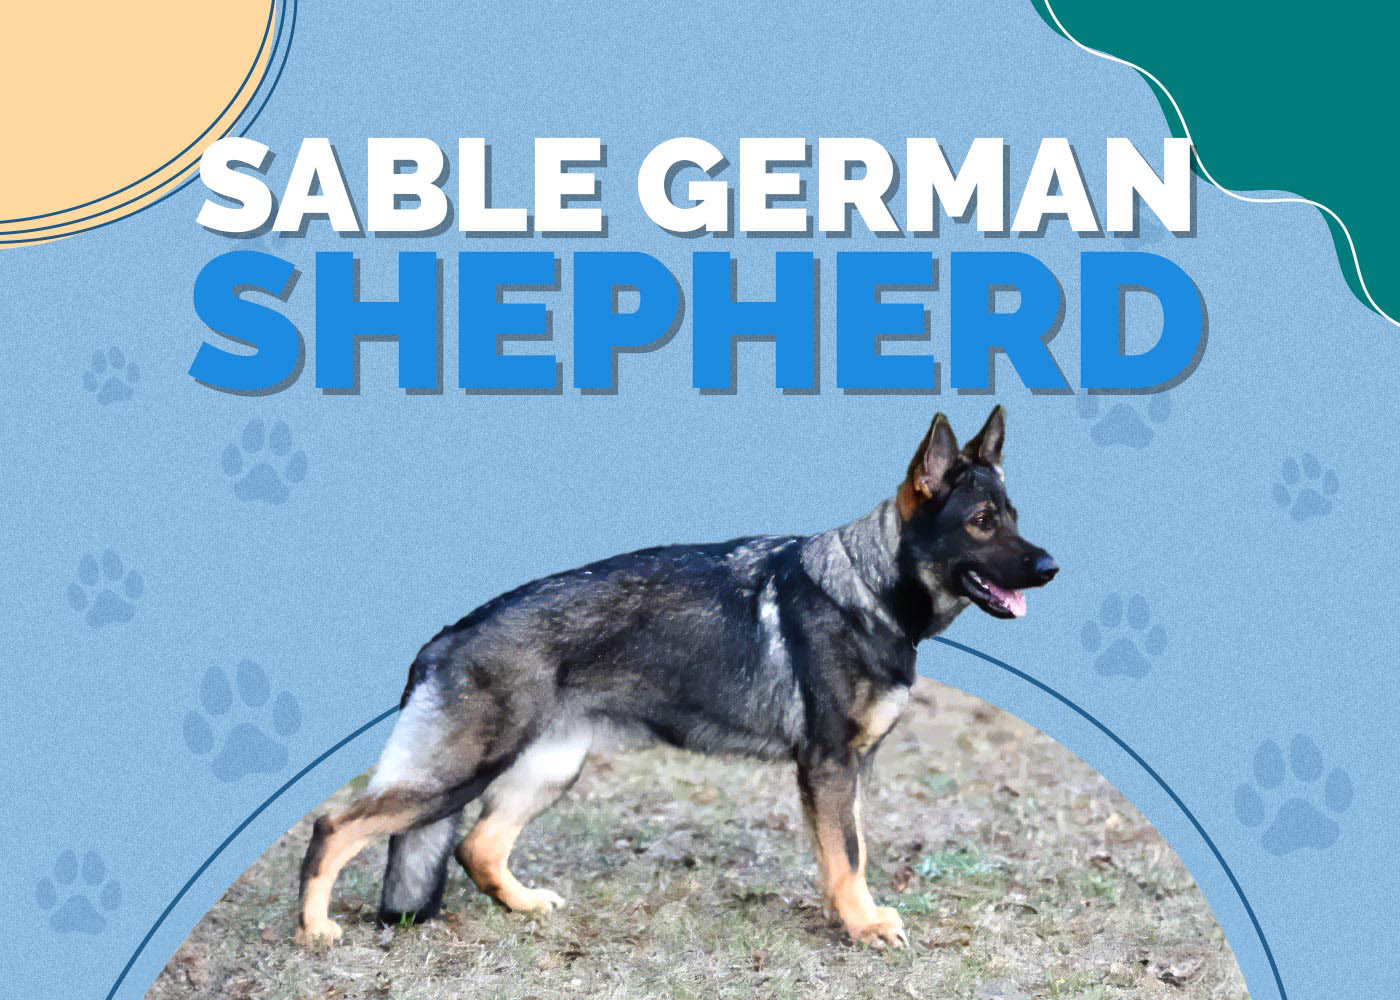 Sable German Shepherd